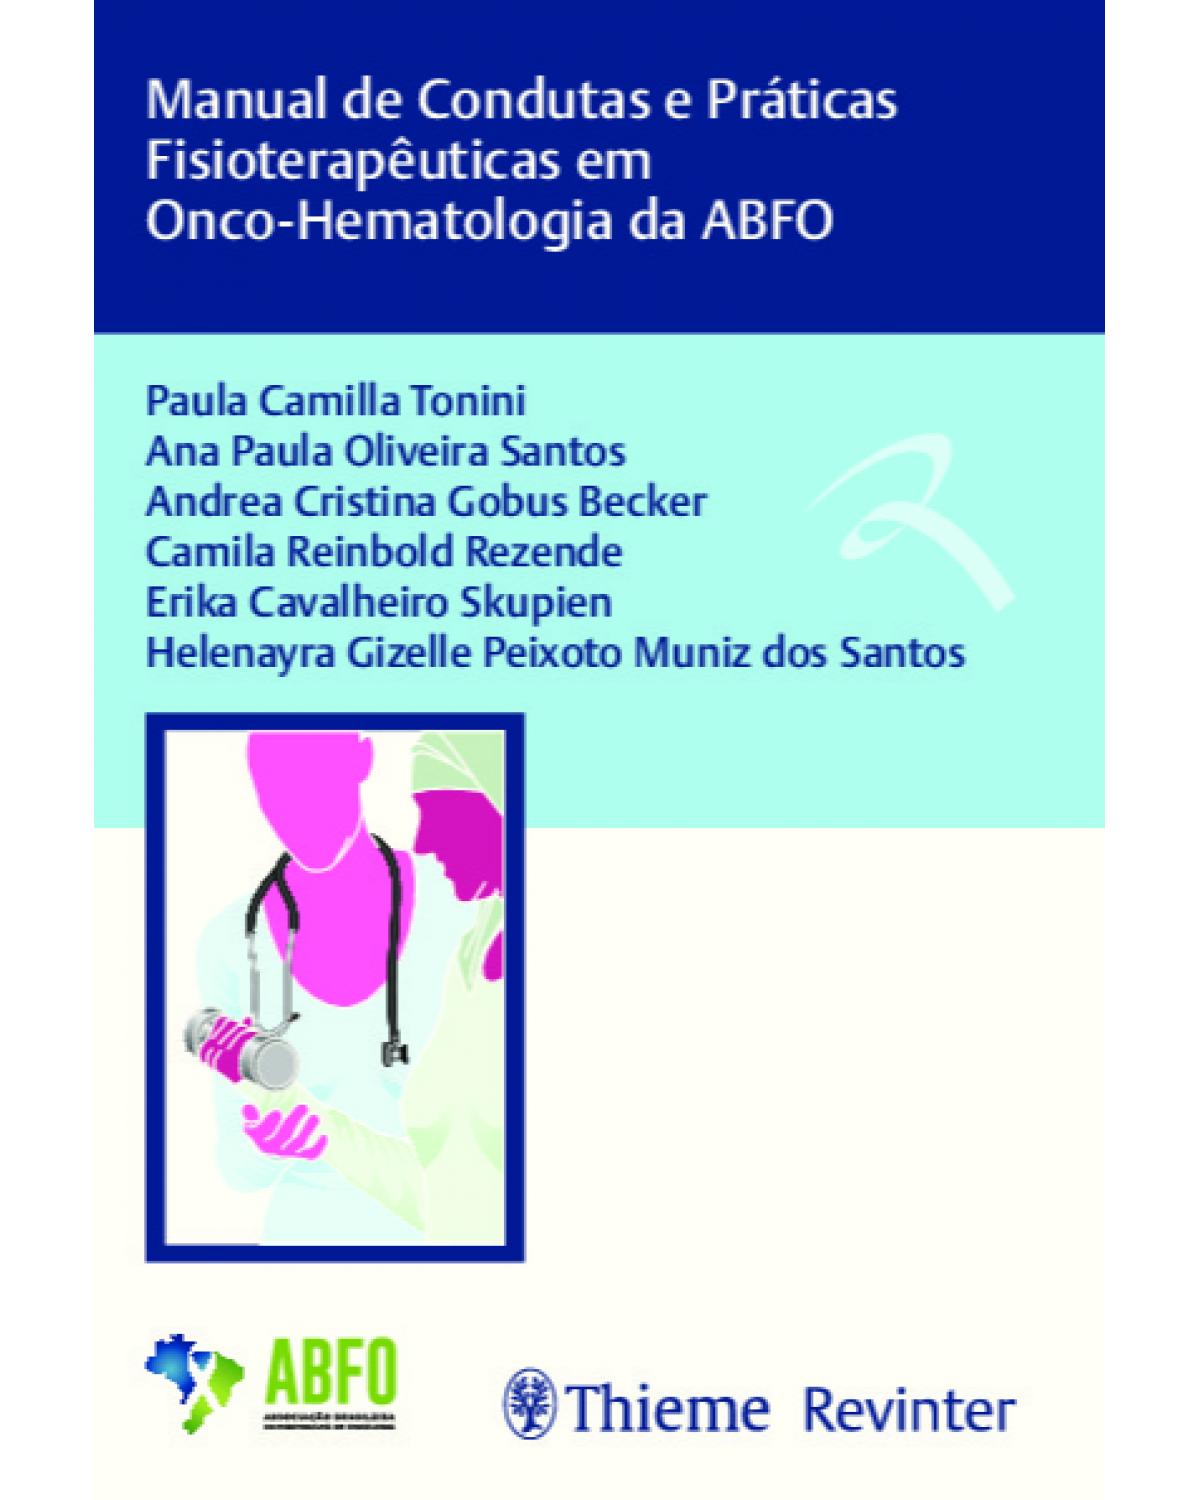 Manual de condutas e práticas fisioterapêuticas em onco-hematologia da ABFO - 1ª Edição | 2019